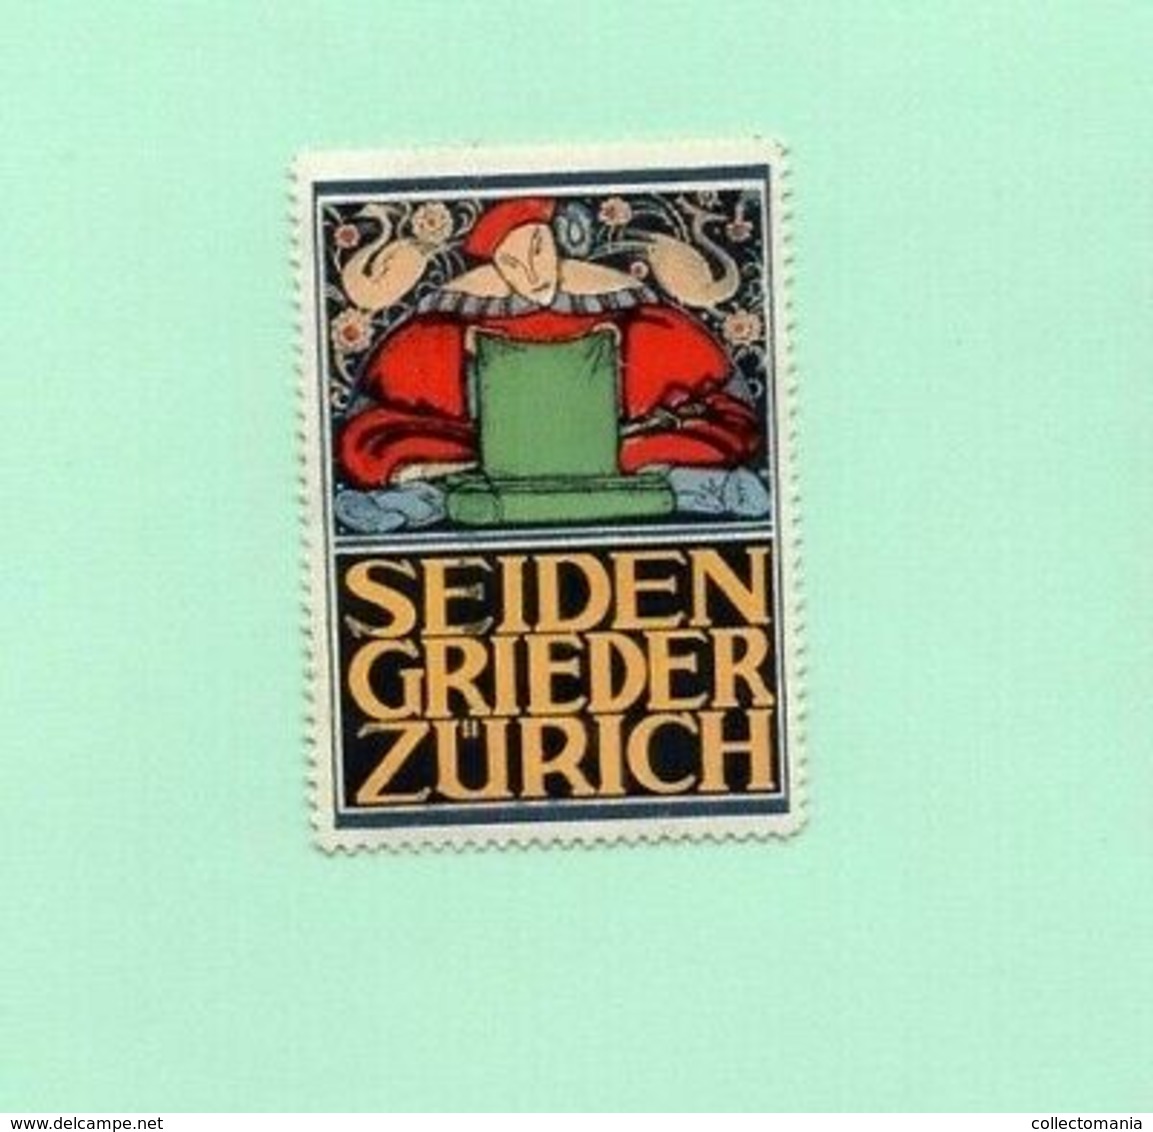 6 Poster Stamps Suisse Switserland Zürich Pflegerinnen Schüle Seiden Spinner Theater 1914 Tuberculose  ZURICH Marken - Bäderwesen